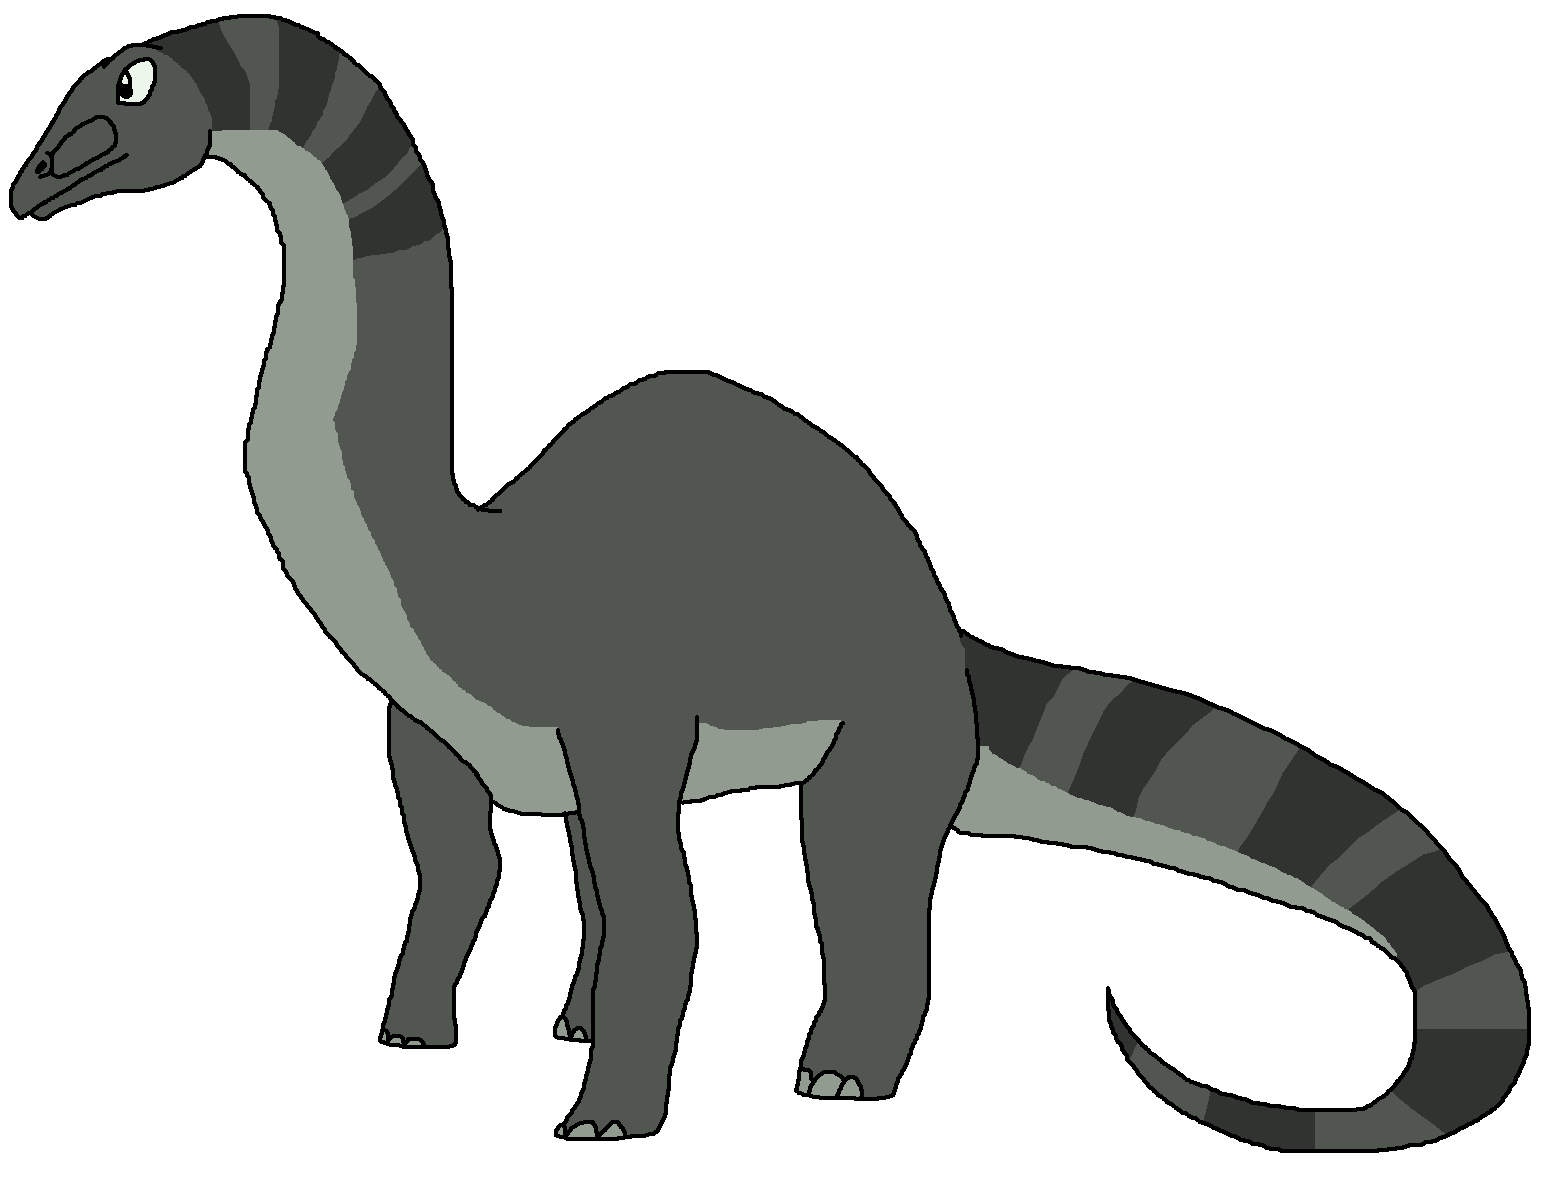 clipart dinosaur gray